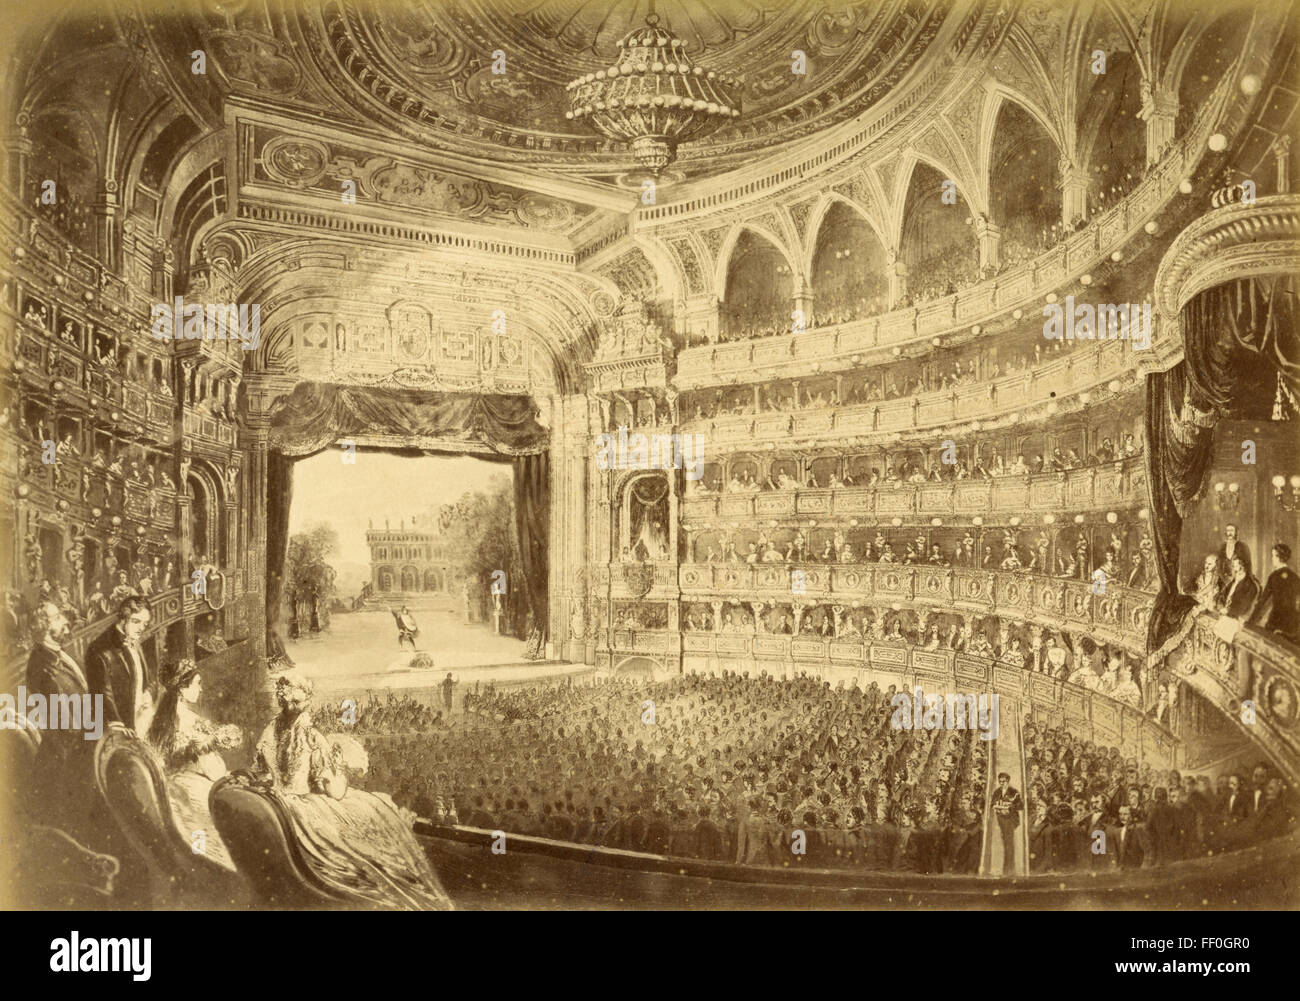 À l'intérieur de l'Opera, Vienne, Autriche, peint Banque D'Images